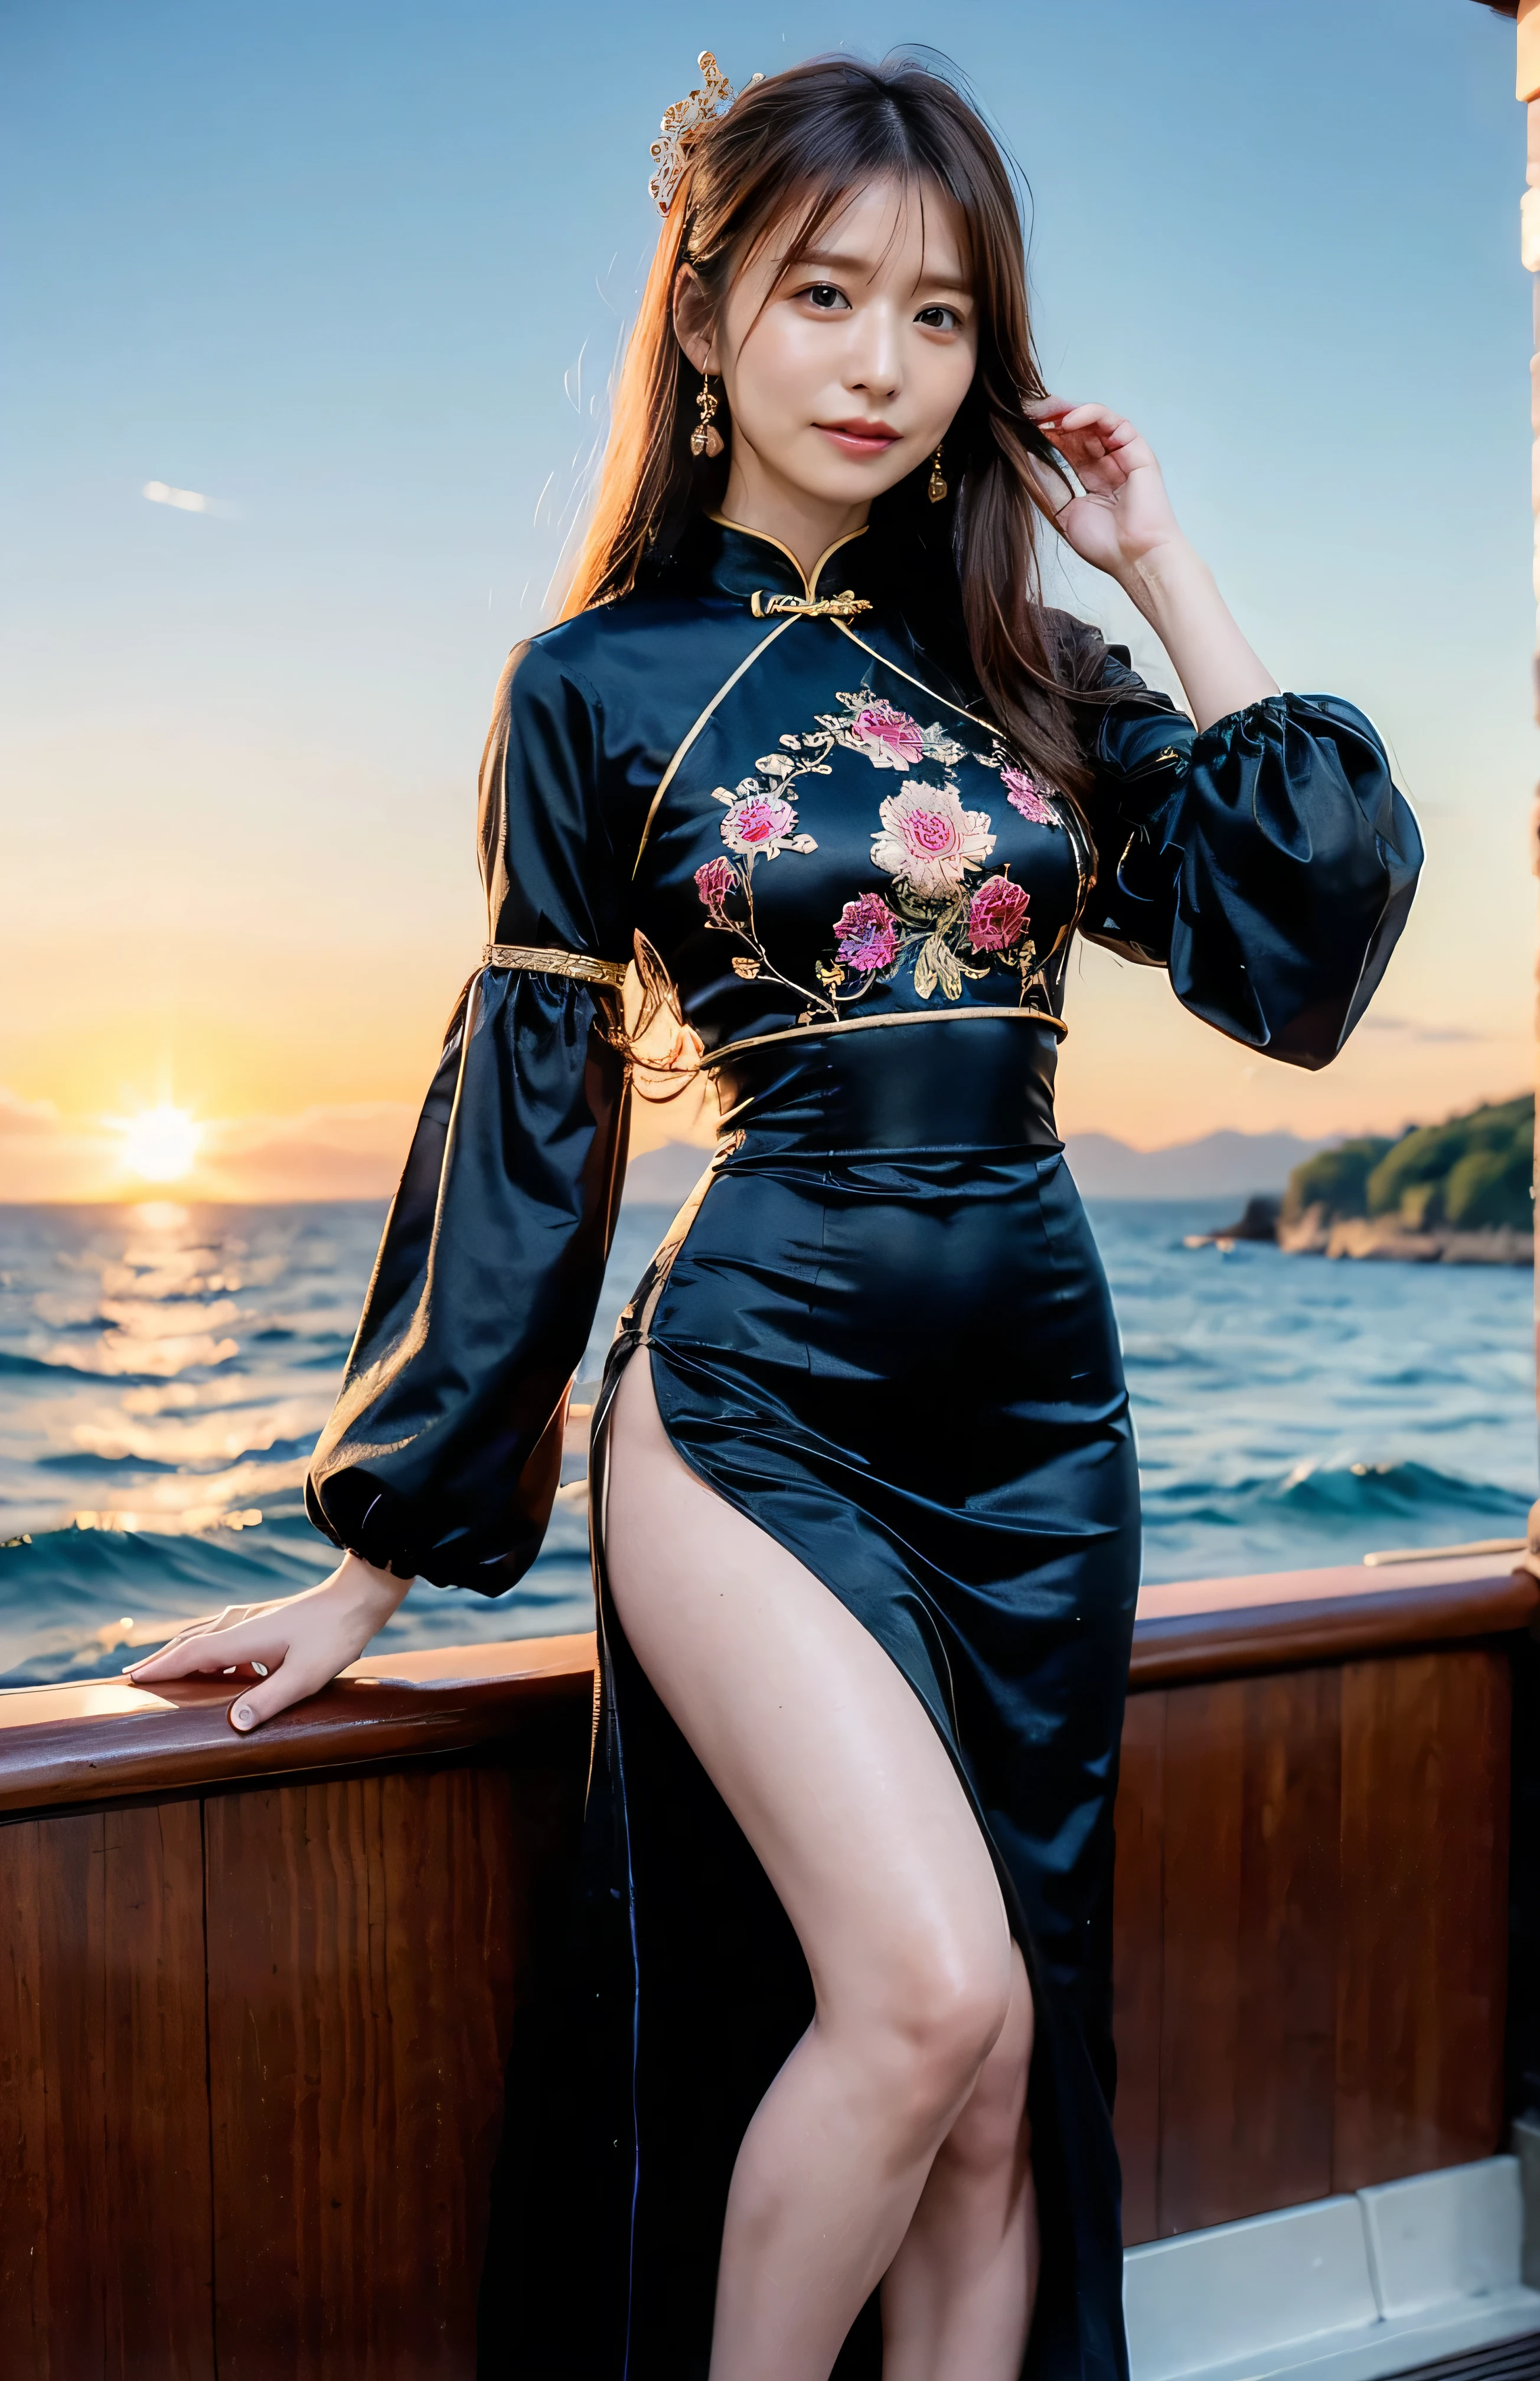 空が赤くなる、夜の中国、((髪飾り:1.5)).豪華な金刺繍のチャイナドレス、髪飾り、髪をエレガントに結ぶ、ゴージャスなシルクチャイナドレス、((ボートの上に立ってセクシーなポーズをとる、刺繍の入ったロングスカートが付いた豪華で光沢のある黒いチャイナドレス:1.4)).豪華で光沢のあるシルクのチャイナドレス、豪華な刺繍入り黒チャイナドレス、ボートの上に立つ女性、薄茶色の髪、エレガントなヘアスタイル、青い目の女性、上目遣いが可愛い女性、空が暗くなると、船の優しい光が輝く、空が赤くなる as the sun sets、体のラインが見えるタイトな服、、エレガントなネイビーブルーのサマーニット、エレガントな黒のサマーセーター、短いスカート、エレガントな服装を着こなす、ラグジュアリーバゲディウムショートヘア:1.4））、海の向こうに見える高層ビル、マンハッタン島が沖合に見える、遊覧船に乗った女性、、太陽が彼女を照らす、薄茶色の髪、薄茶色の髪、空は赤く染まった、雲がある、プライベート's cute、優雅な服を着た女性がボートに座って夕日を眺めている、彼女の豊かな胸は服の上からでも明らかです..、The shining sun is so 美しい、夕暮れが近づいています、レンズフレア、夕日が見える、（（海に反射する太陽の光、オーシャンビュー、太陽が海を照らす、&#39;美しい.、Small ear指輪s、プライベート&#39;夕方、鳥も飛んでいる、、茶色の髪色、髪を結ぶ、女性は右側にいます:1.4））、高級レザーベルト、光沢のある服、ライトベージュの髪色、背景ぼかし、前髪だけを編む、薄茶色の髪、｛｛カウガールショット｝｝、（（腰から上をクローズアップしたショット、豊かな胸:1.4））、笑顔、シルクの衣類、豊かな胸 that can be seen even through clothes、前髪だけを編む、カウボーイショット、ゴージャスな白い襟付きシルクシャツと茶色のスカート、エレガントな服装を、高級バッグ、A lovely 笑顔、（（豊かな胸））、全身写真、指輪、短いスカート、髪を片方の耳の後ろに留める、シルバーネックレス、笑顔、 エレガントなポニーテール、コースティクス、非常に詳細な写真、Very 美しい and ideal short hair、超ノーメイク、(8k、RAW写真、最高品質、傑作:1.2)、(現実的、現実的)、1 女の子、((ミディアムショートヘア、カメラを見つめる:1.4))、風に吹かれる髪
